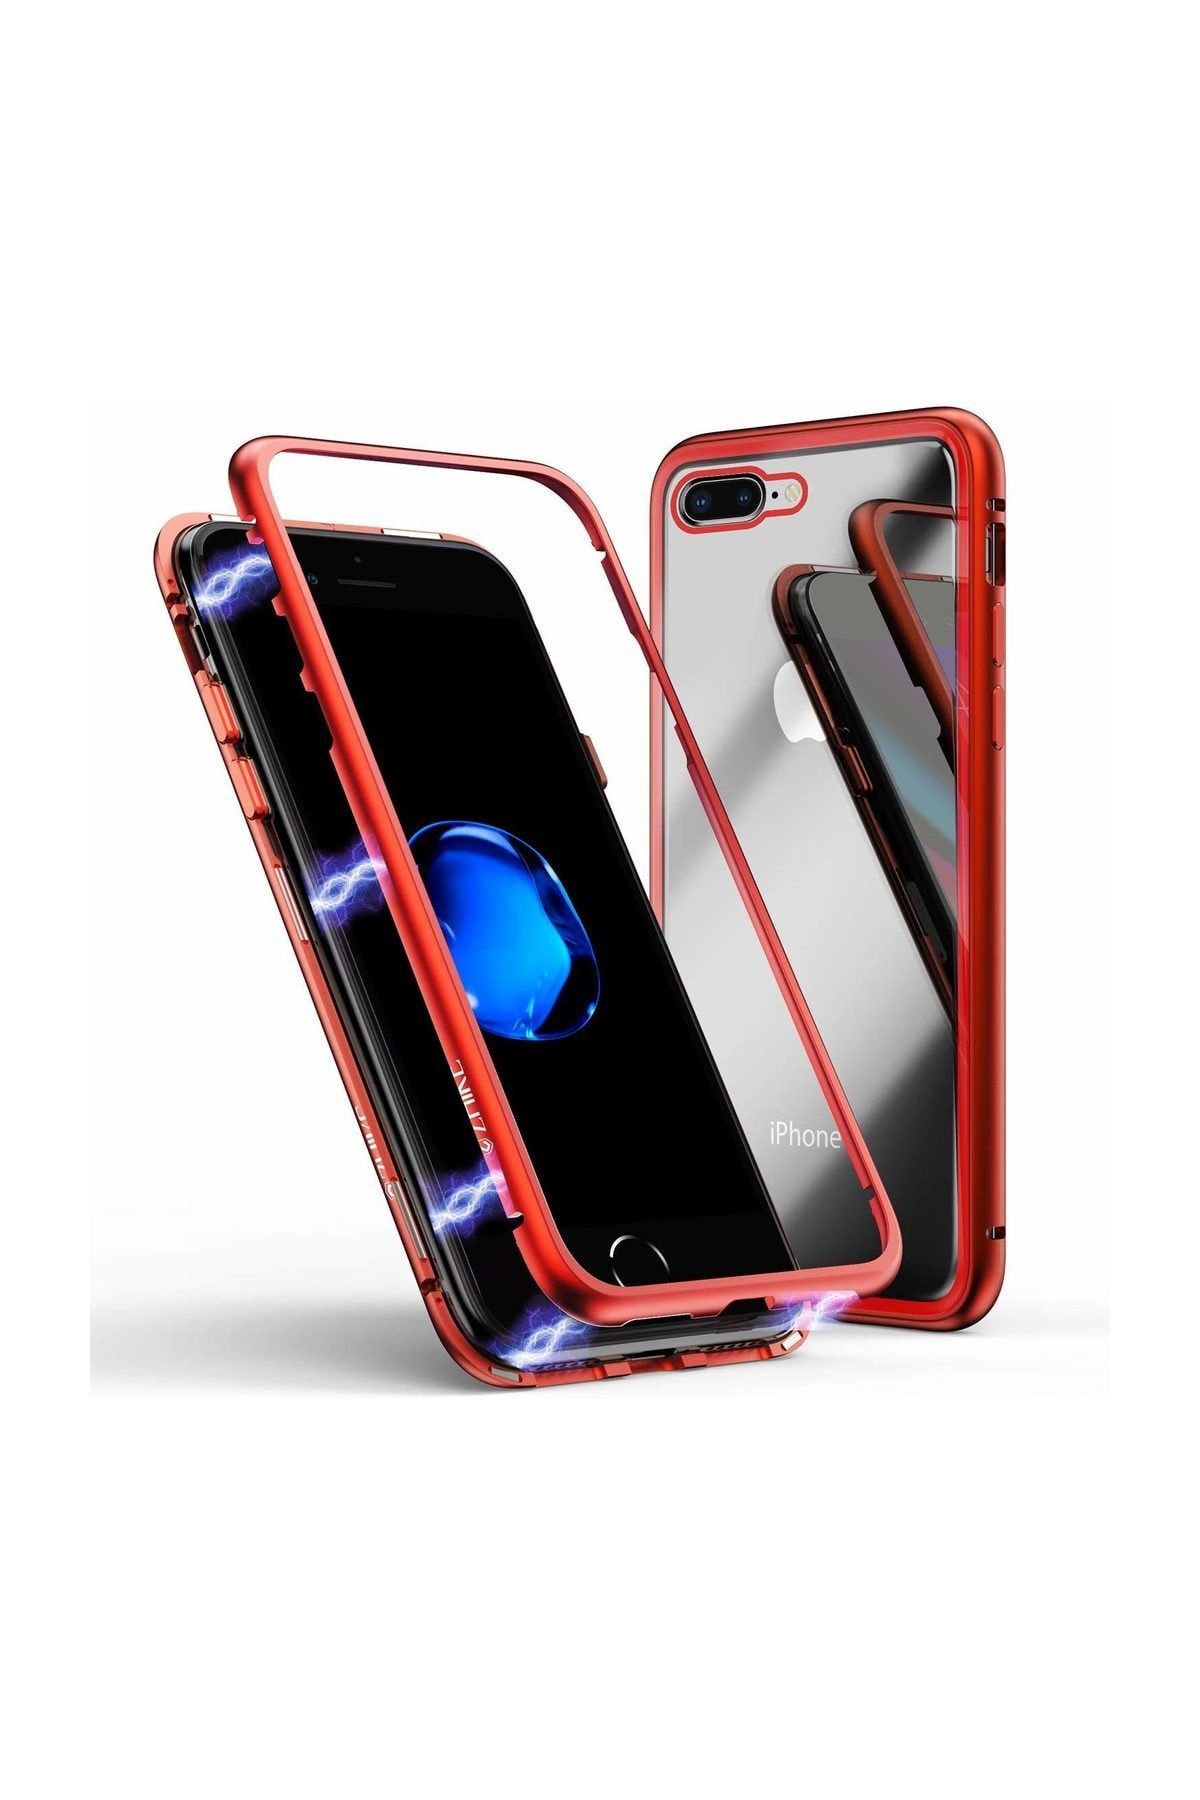 Tsmart iPhone 6S için Mıknatıslı 360 Derece ön ve arka cam Full Korumalı Magnet Case, Kırmızı Renk